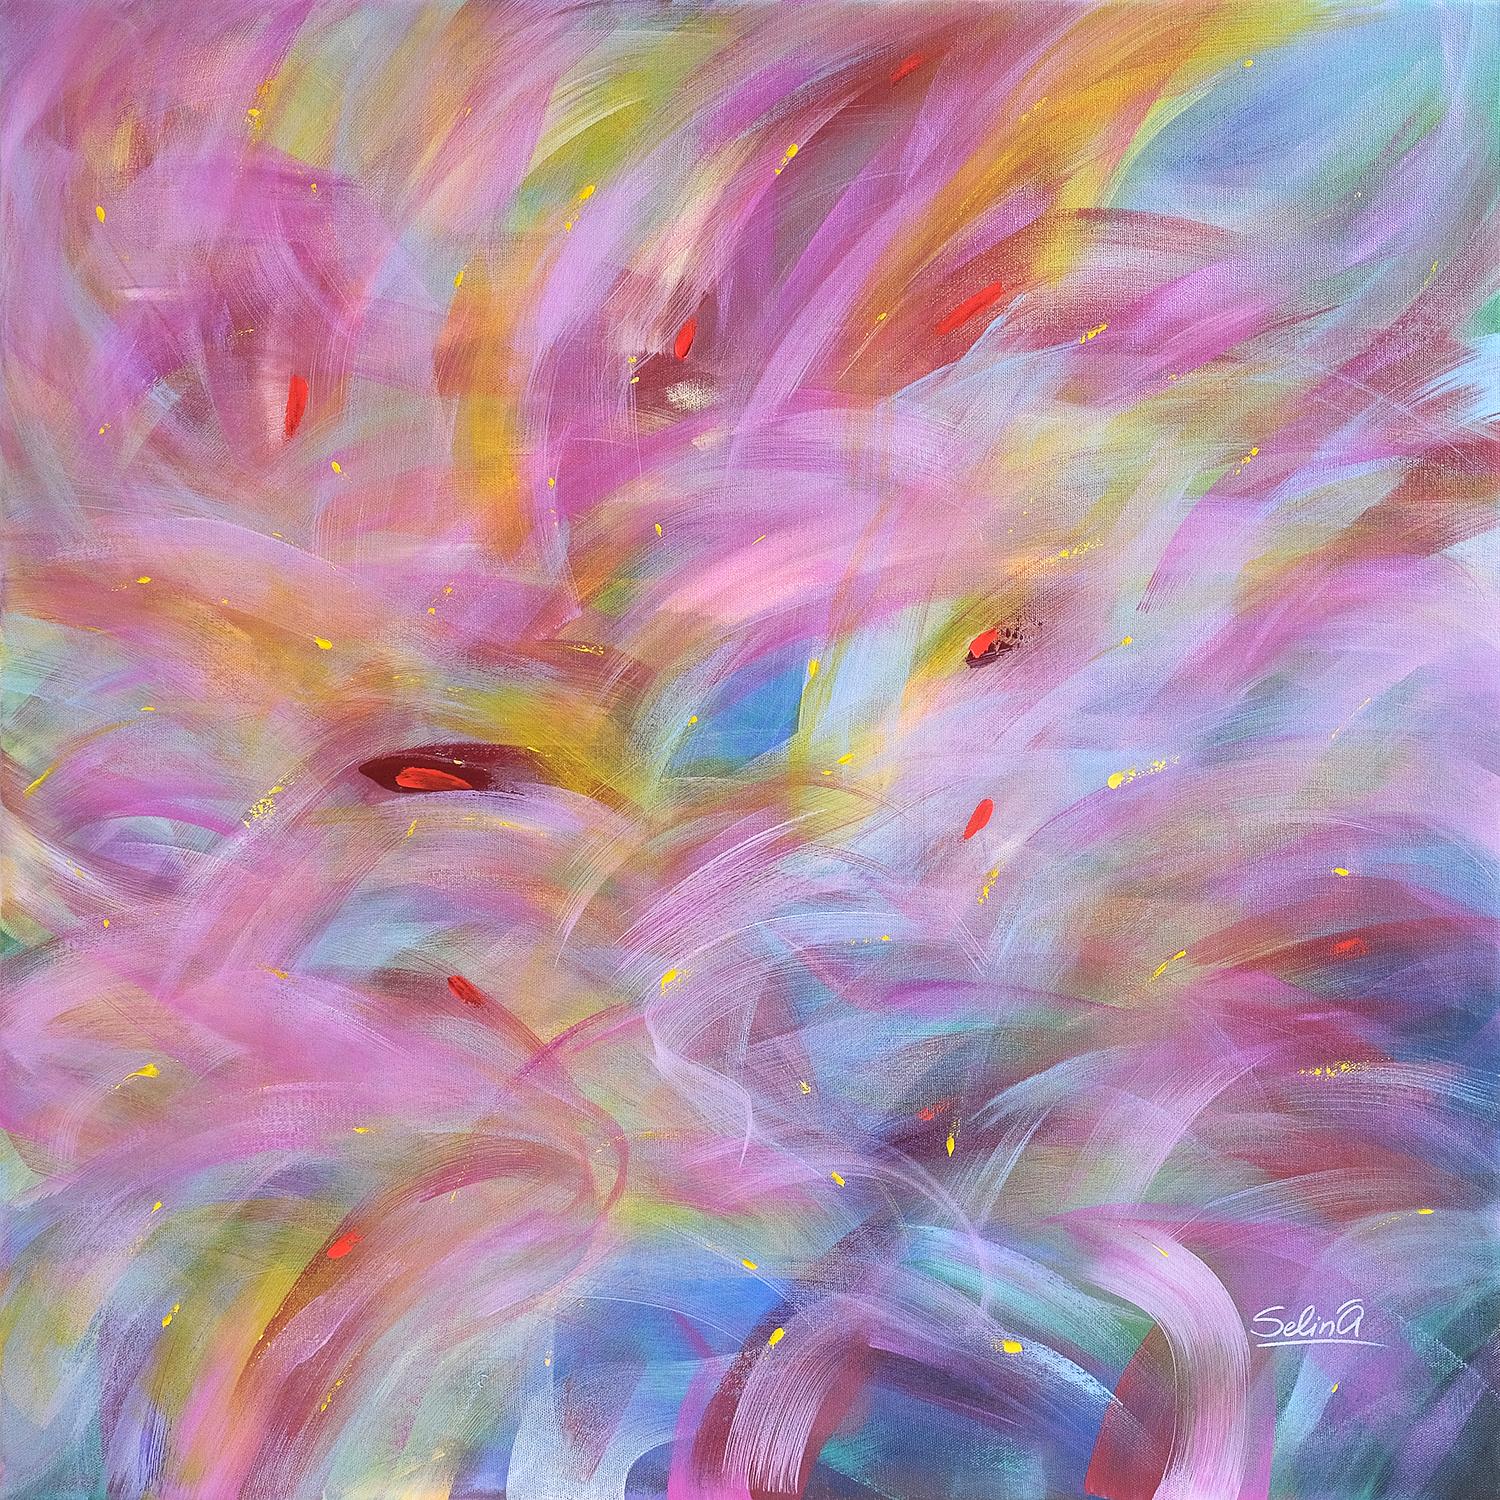 La lumière du matin, peinture abstraite colorée moderne 100x100cm d'Anna Selina